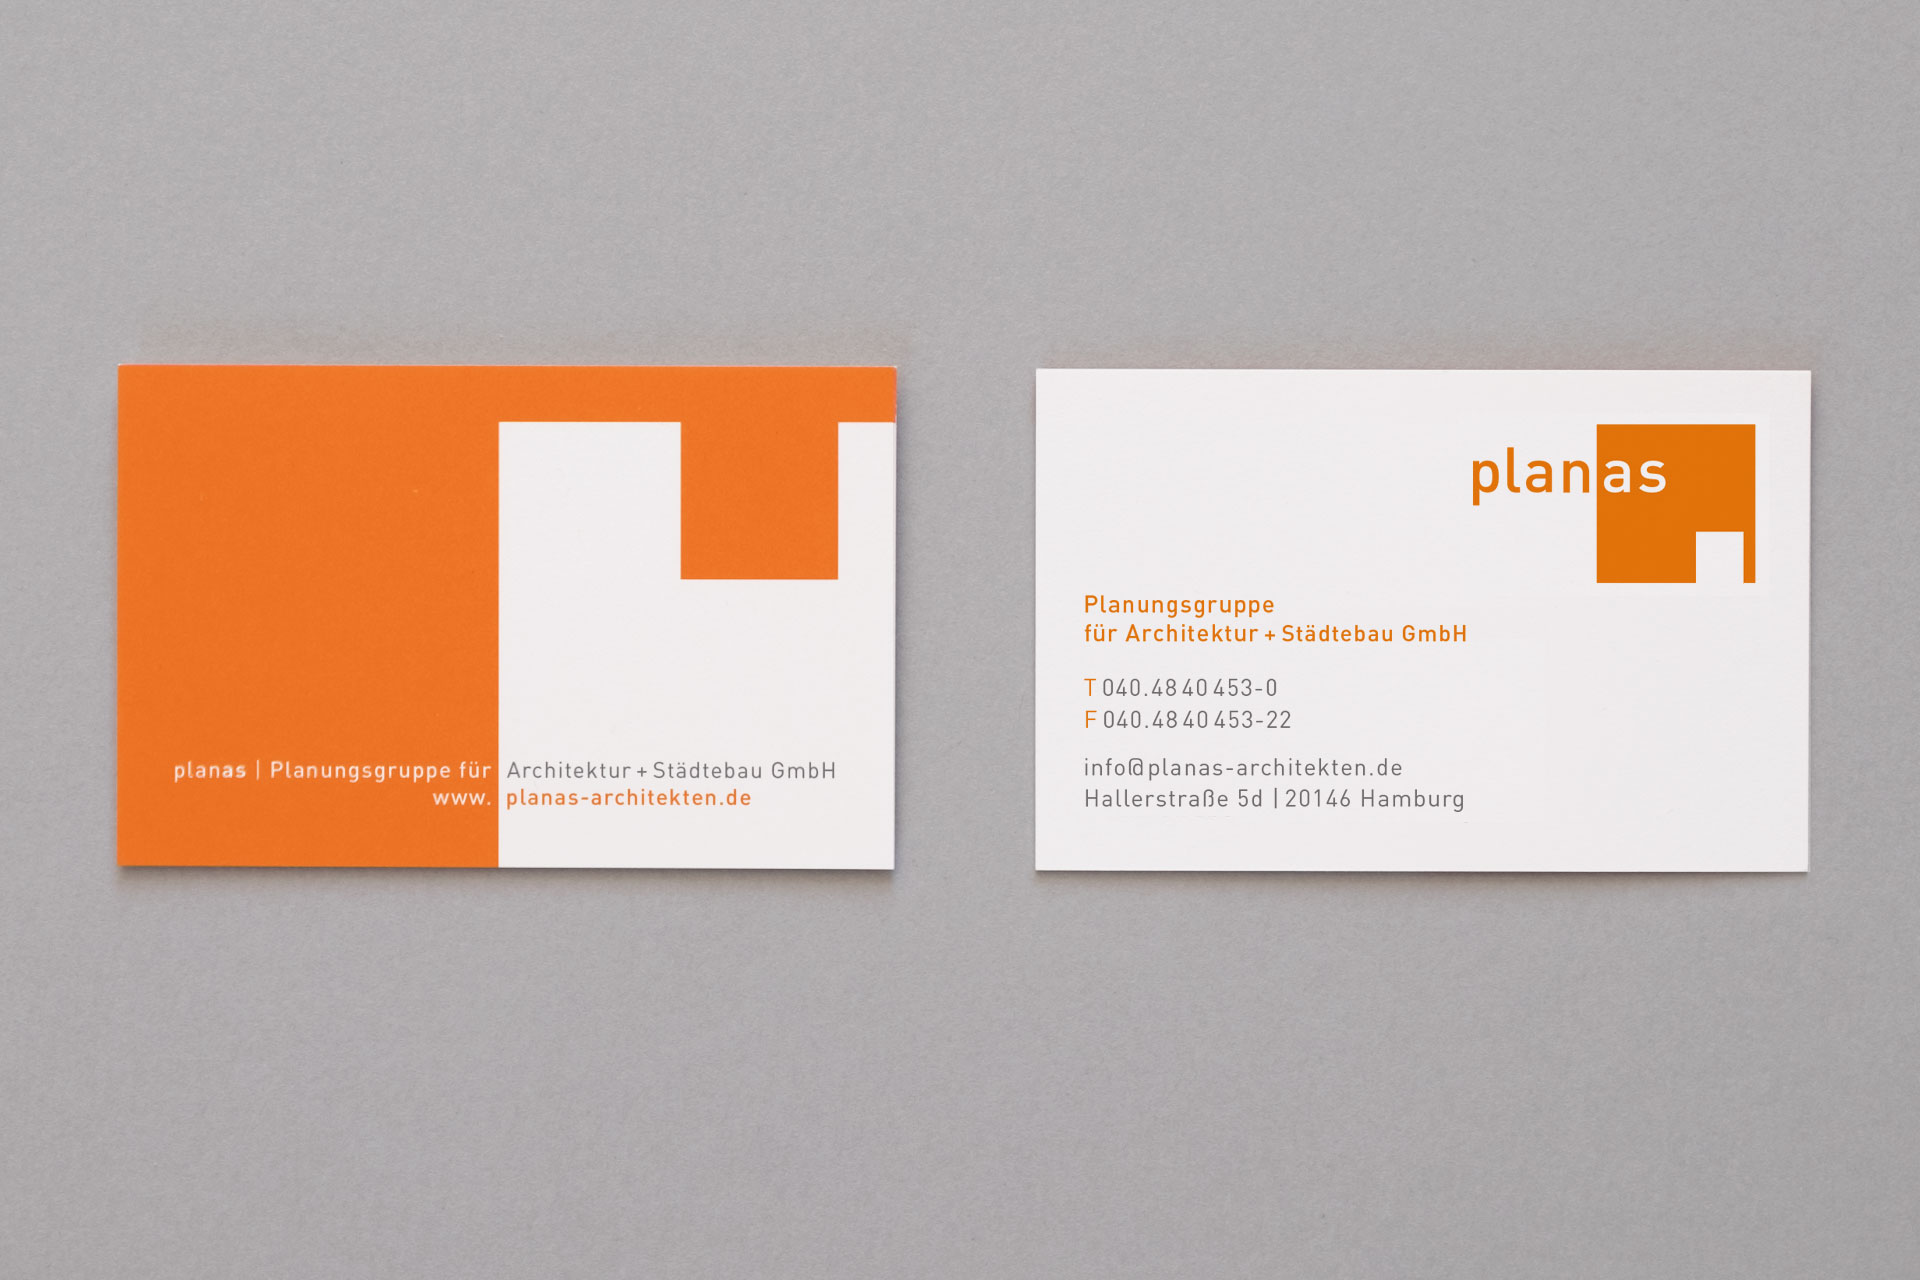 bbildung der Geschäftsausstattung (Visitenkarten) für Planas Architekten mit orangem Logo und dessen Negativform